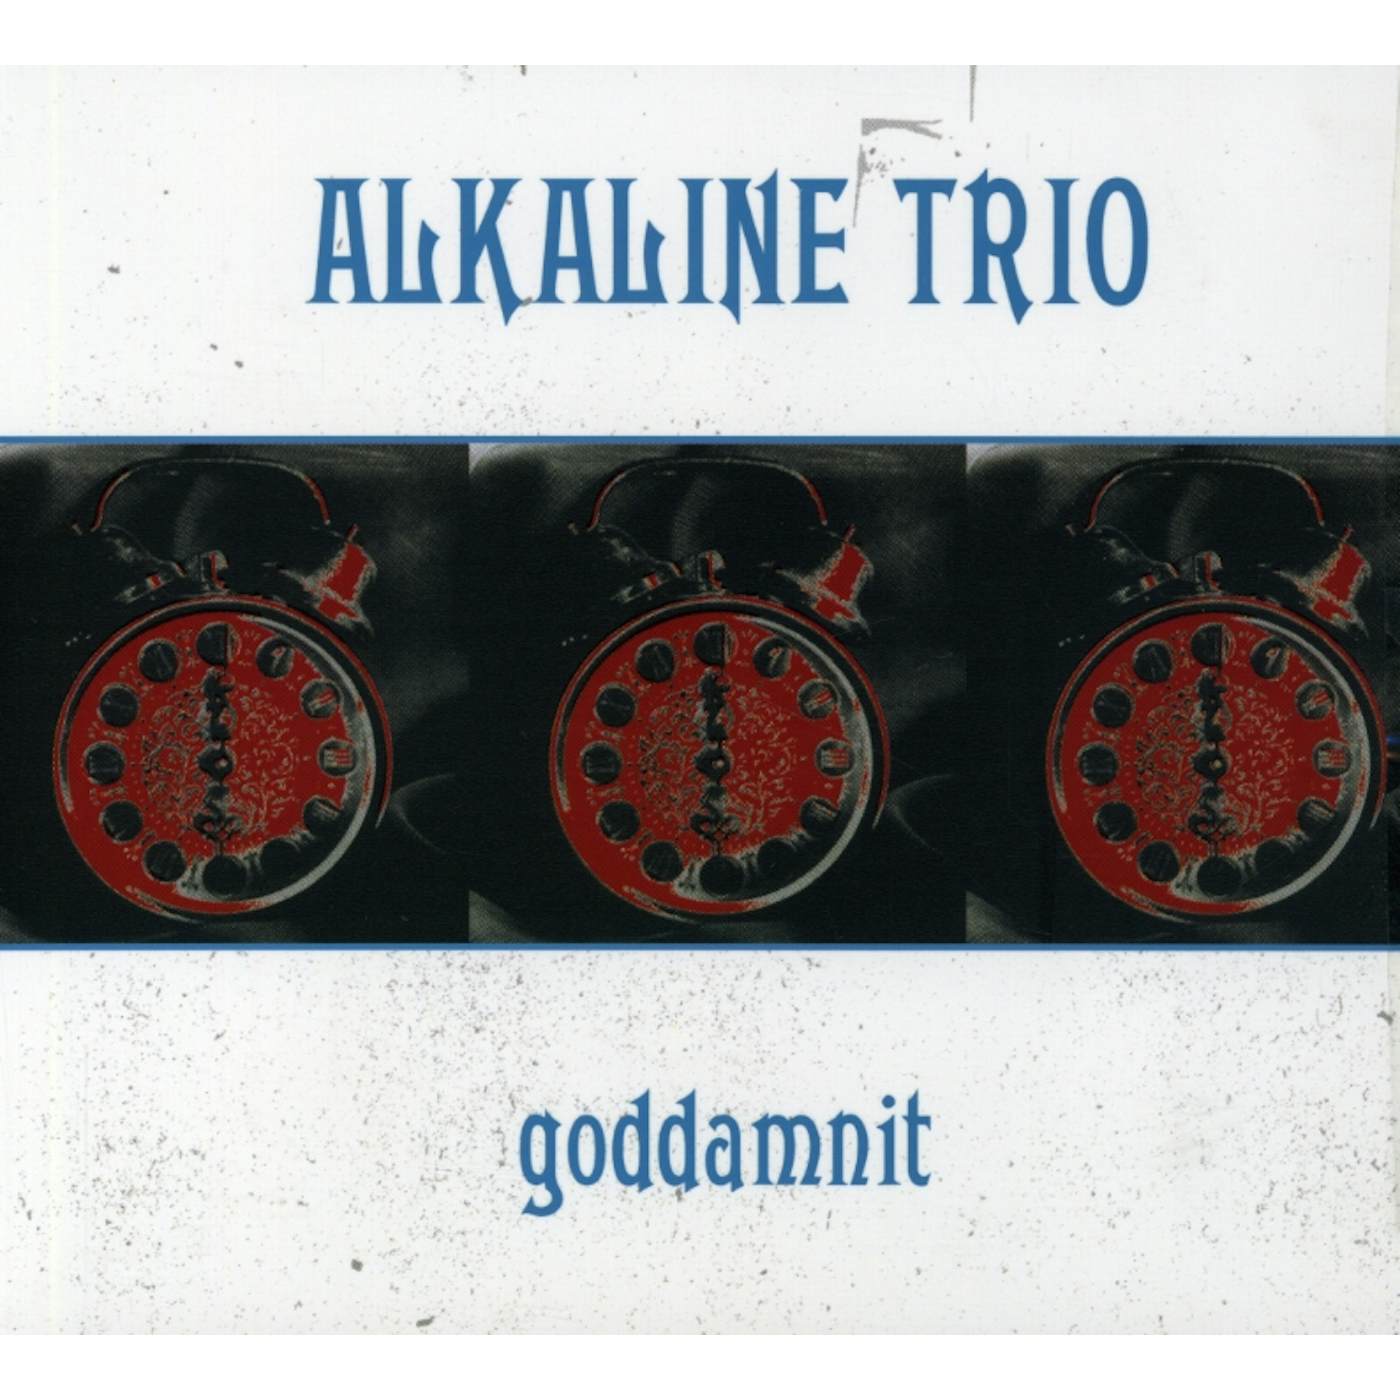 Alkaline Trio GODDAMNIT CD